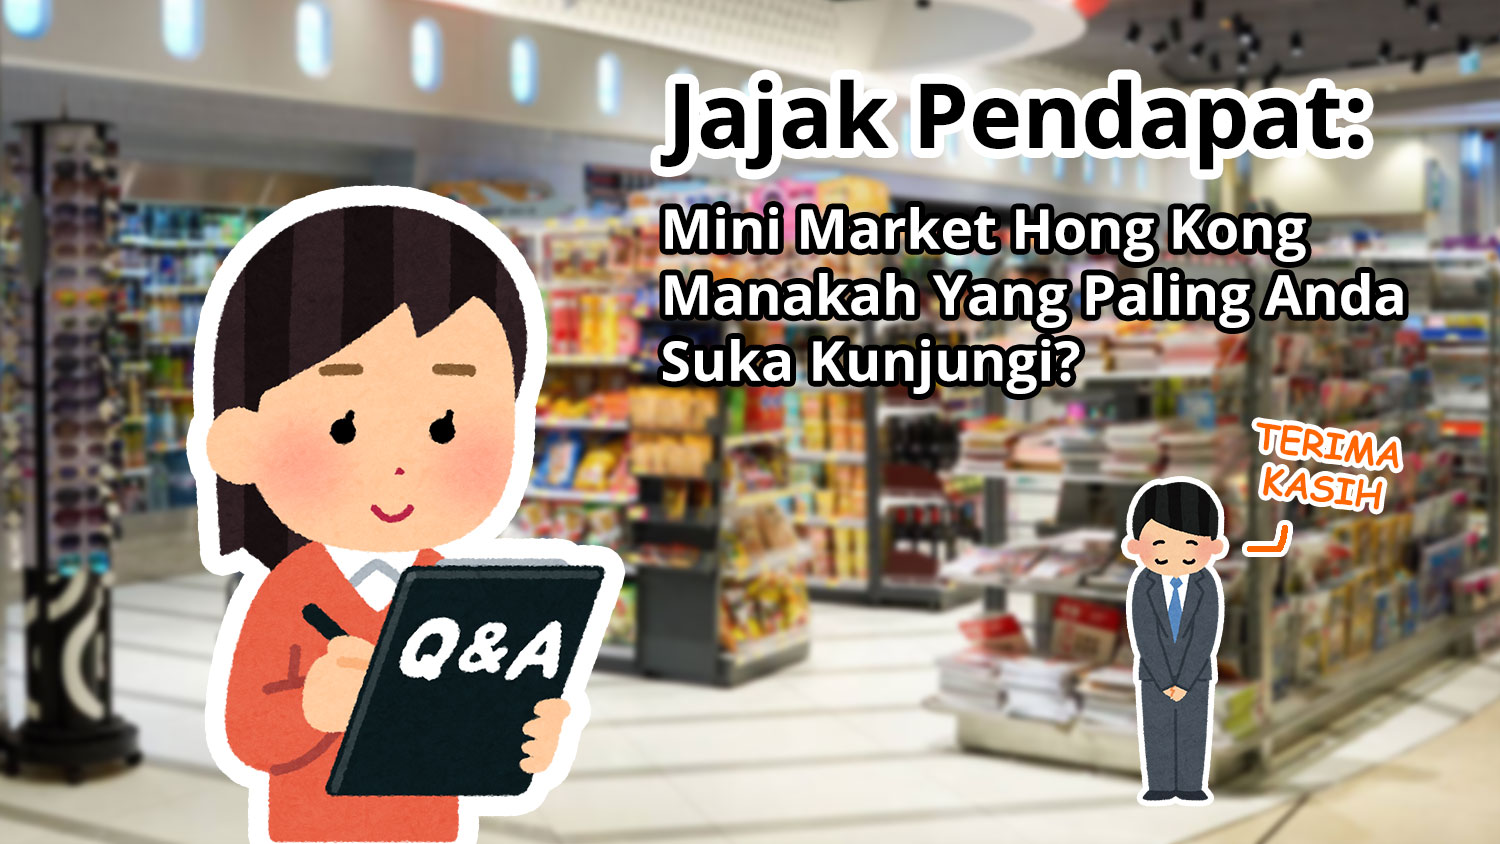 Mini Market Hong Kong Manakah Yang Paling Anda Suka Kunjungi?